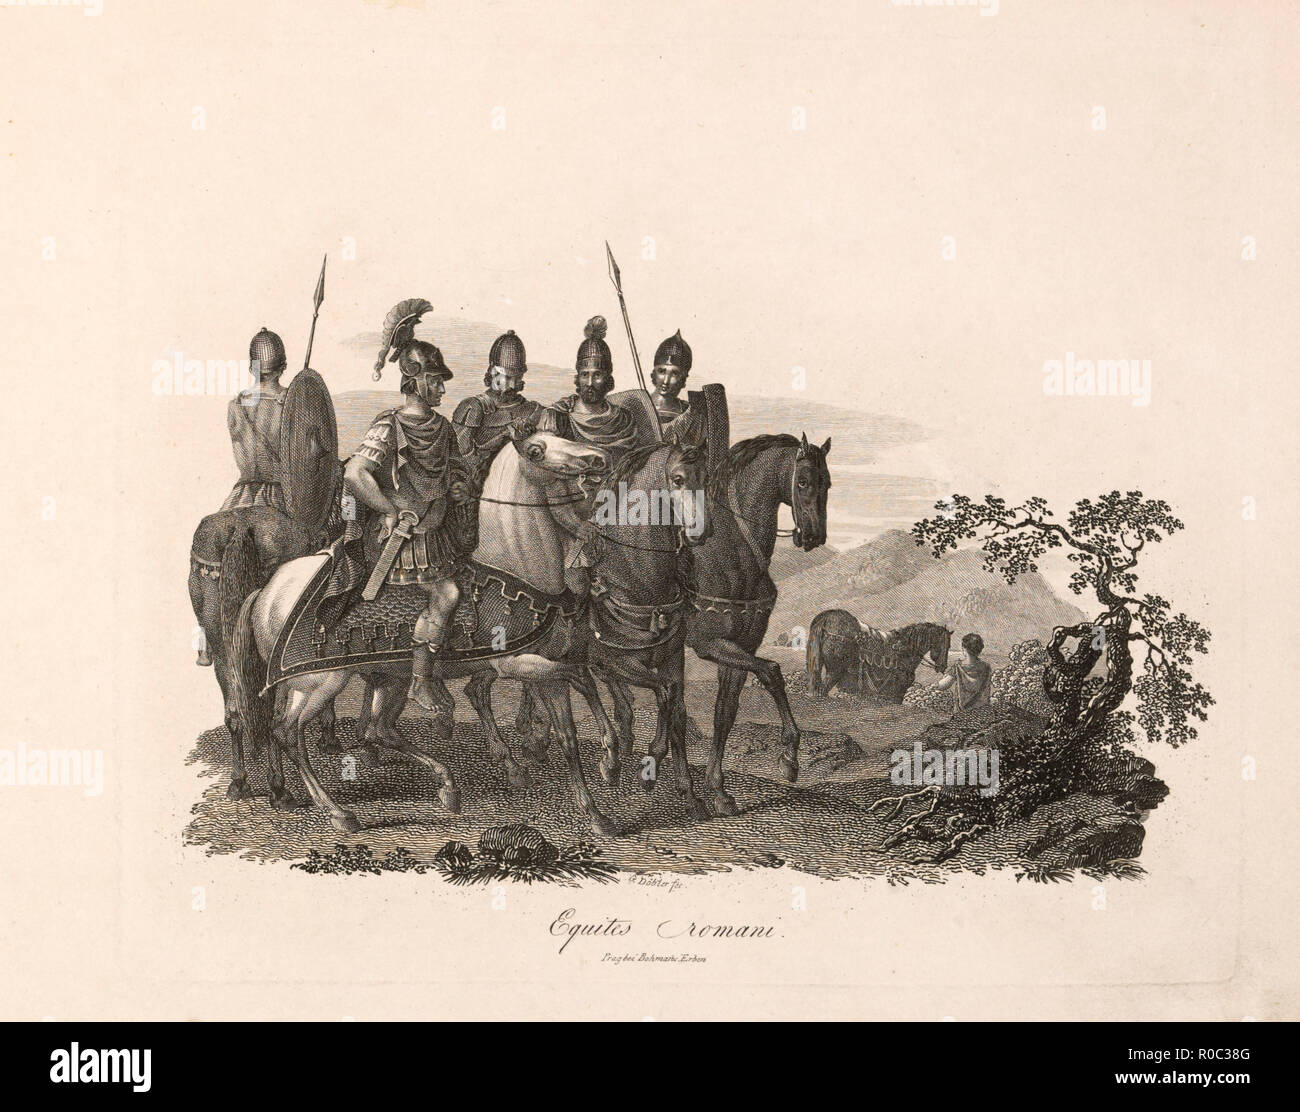 Les cavaliers romains, reçus par EQUITES Romani, gravure, G. Dobler, 1819 Banque D'Images